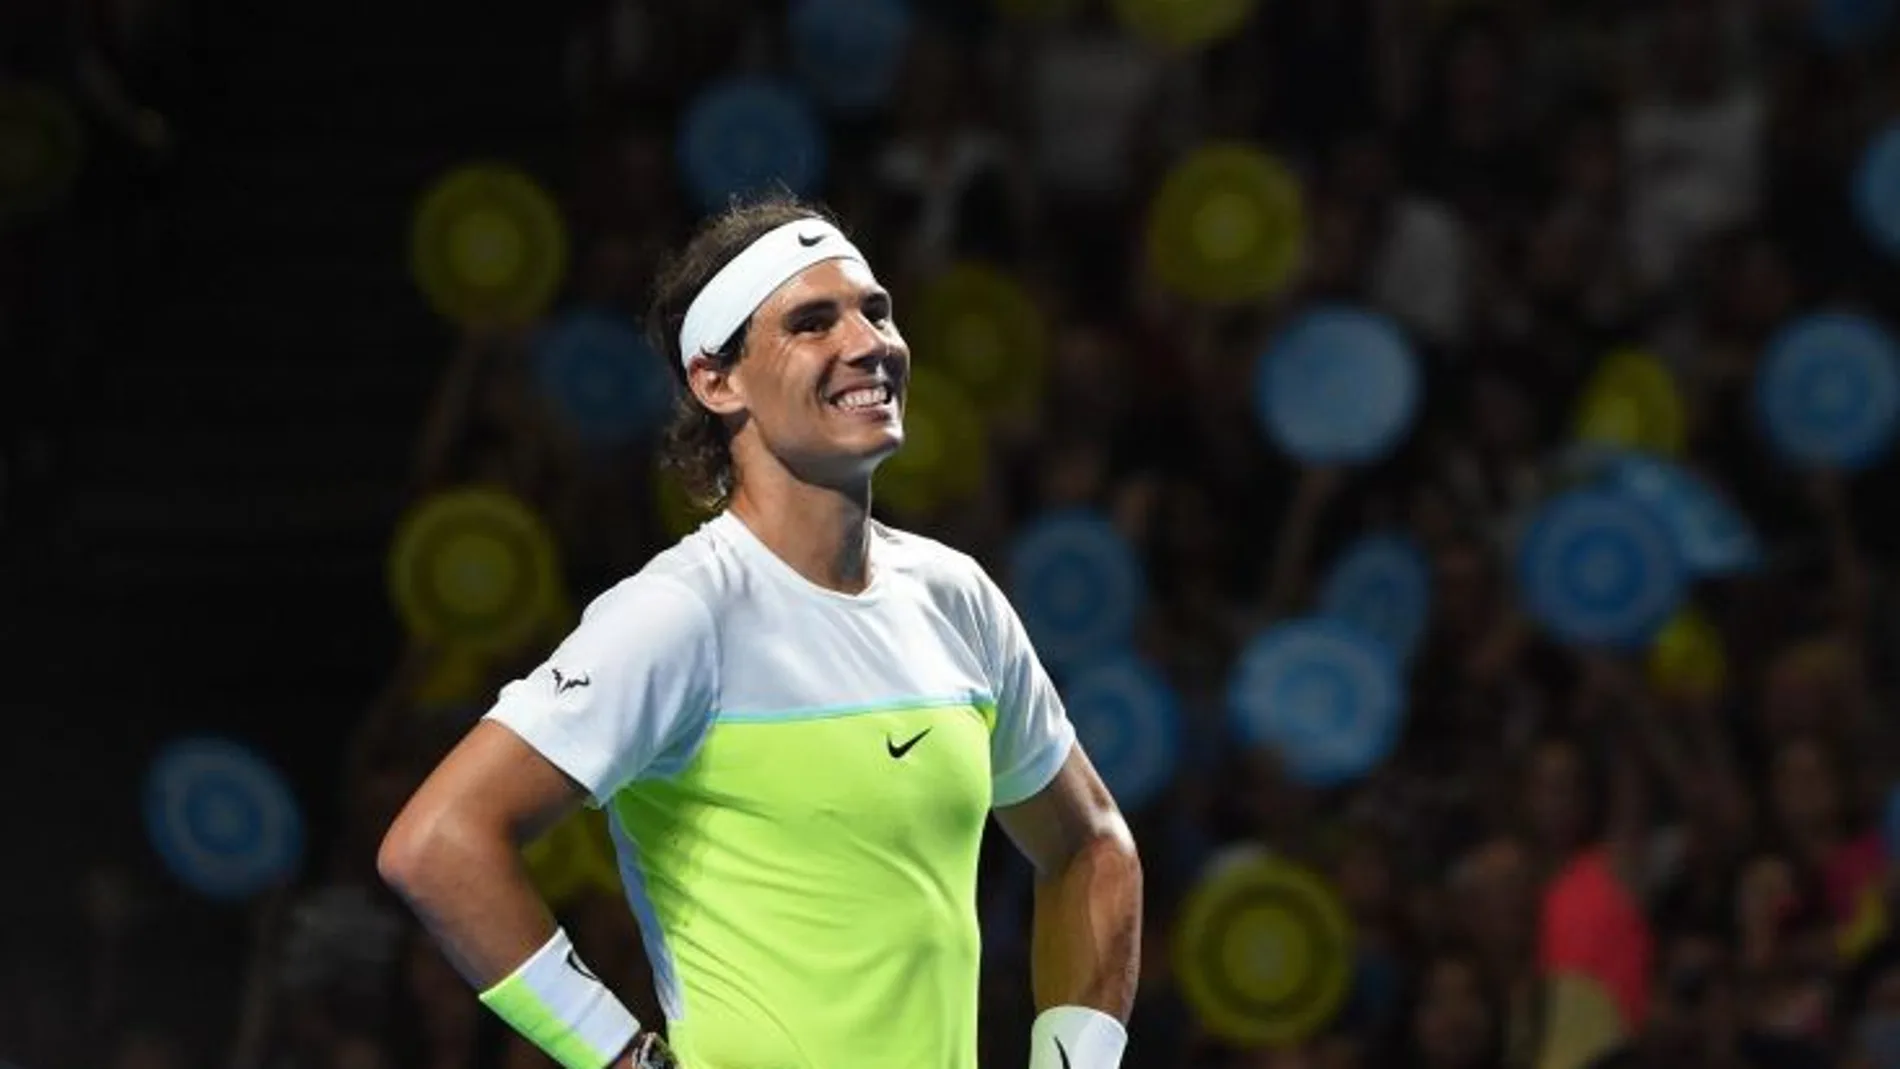 Rafael Nadal devuelve durante el partido contra el australiano Lleyton Hewitt el lunes, 11 de enero de 2016